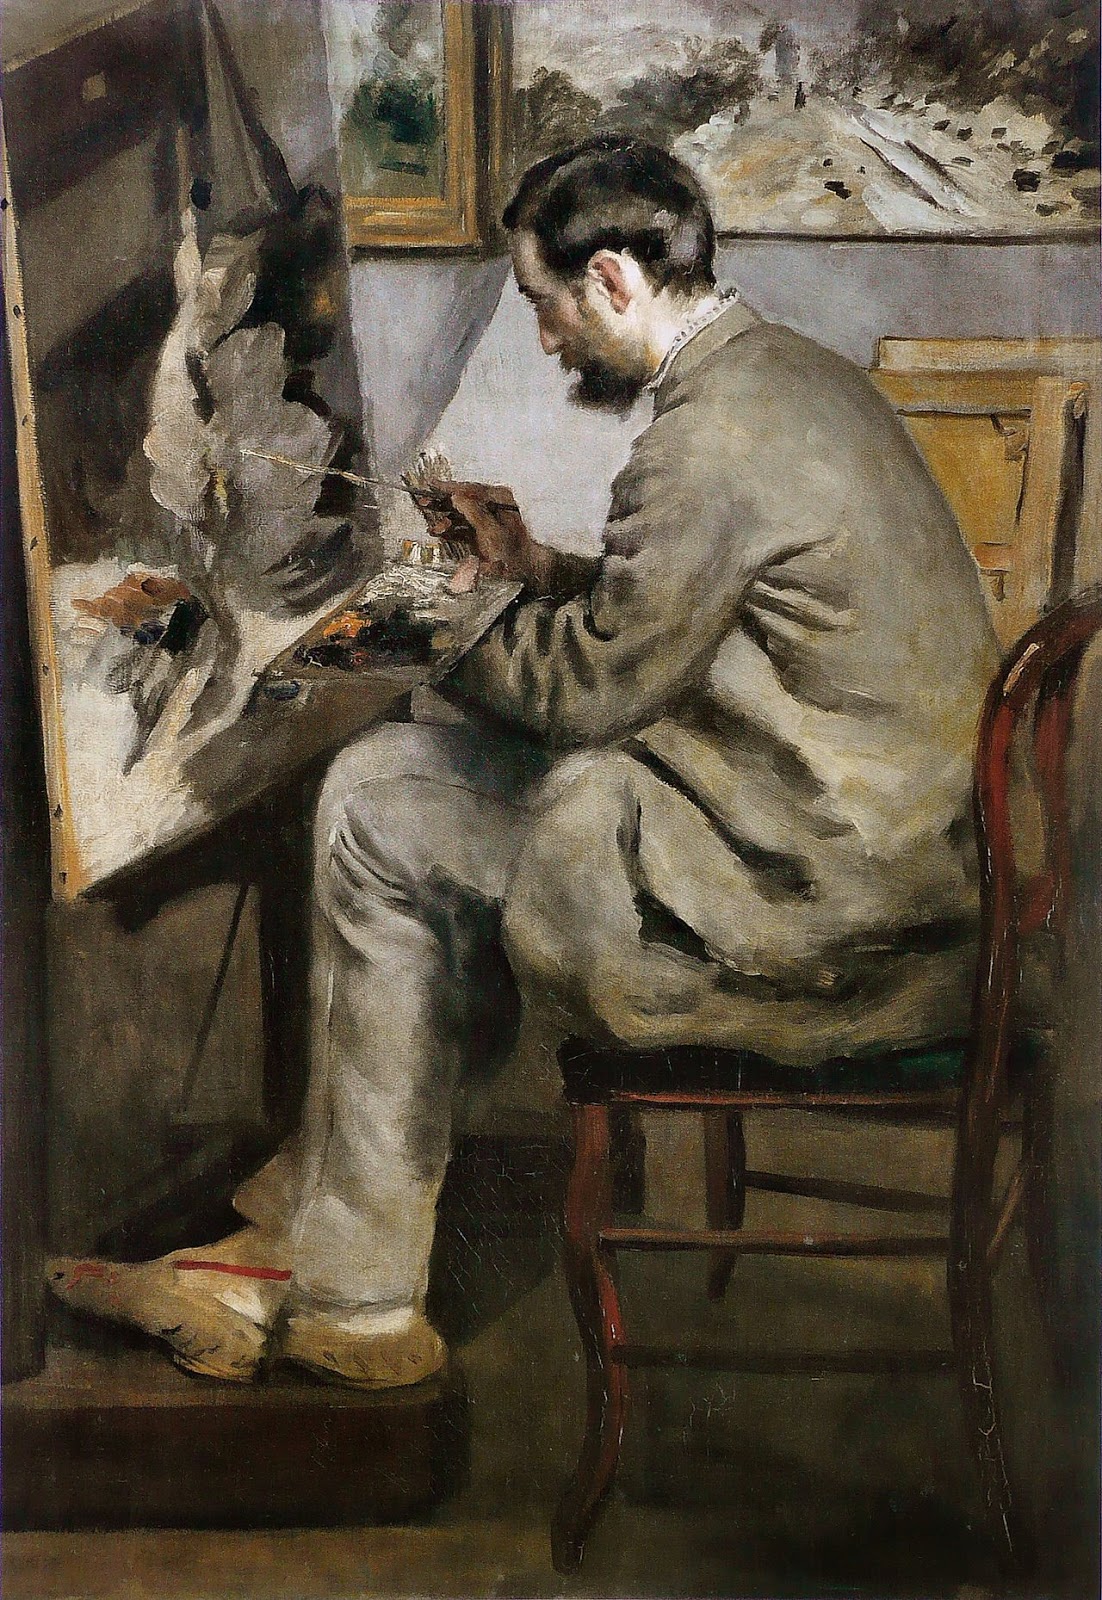 Pierre+Auguste+Renoir-1841-1-19 (491).jpg